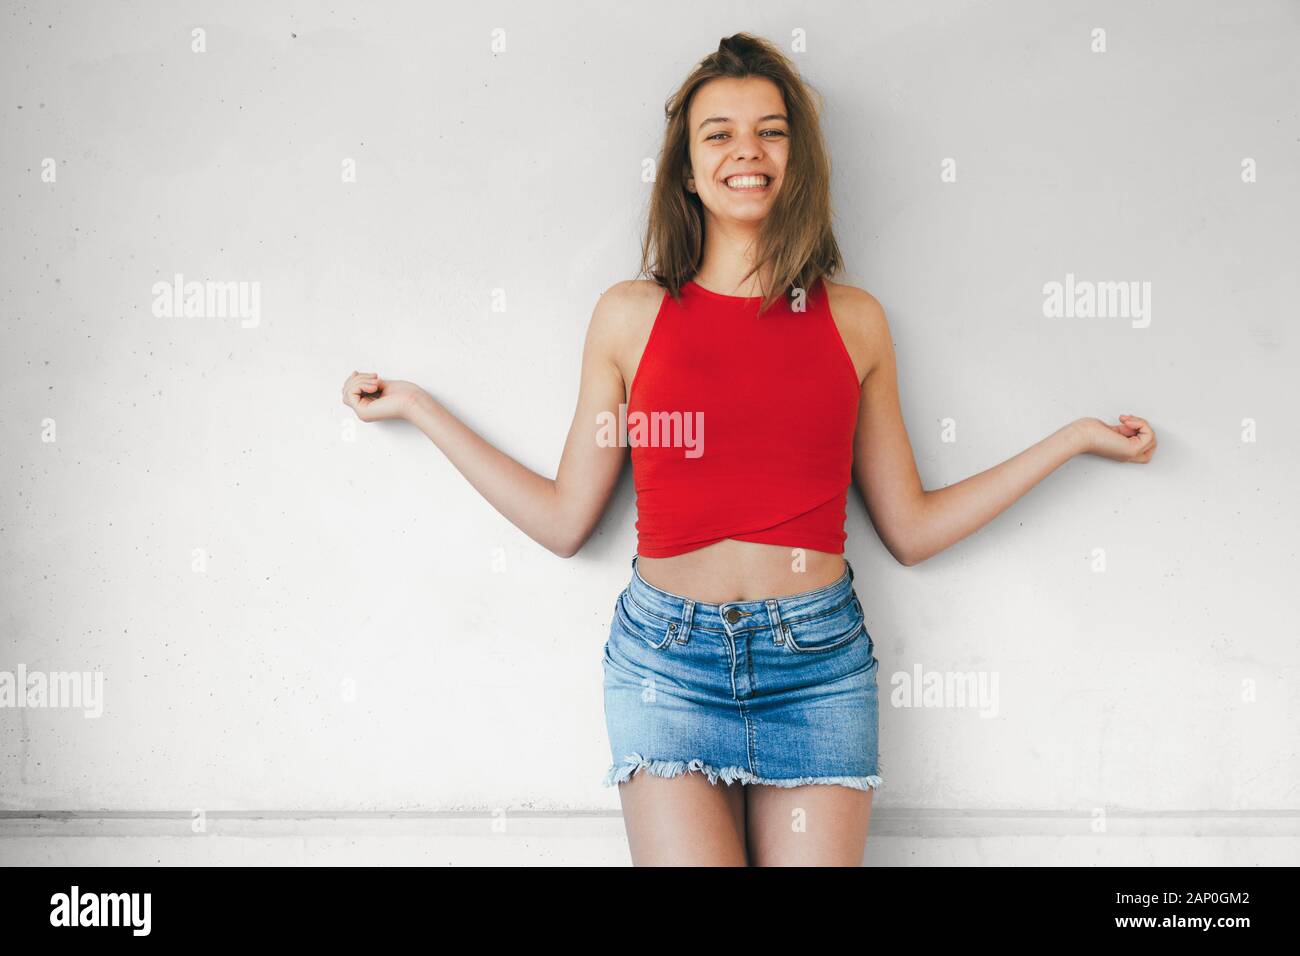 Belle teen girl in red top court et mini jupe en jean riant contre un mur en béton à bras ouverts Banque D'Images